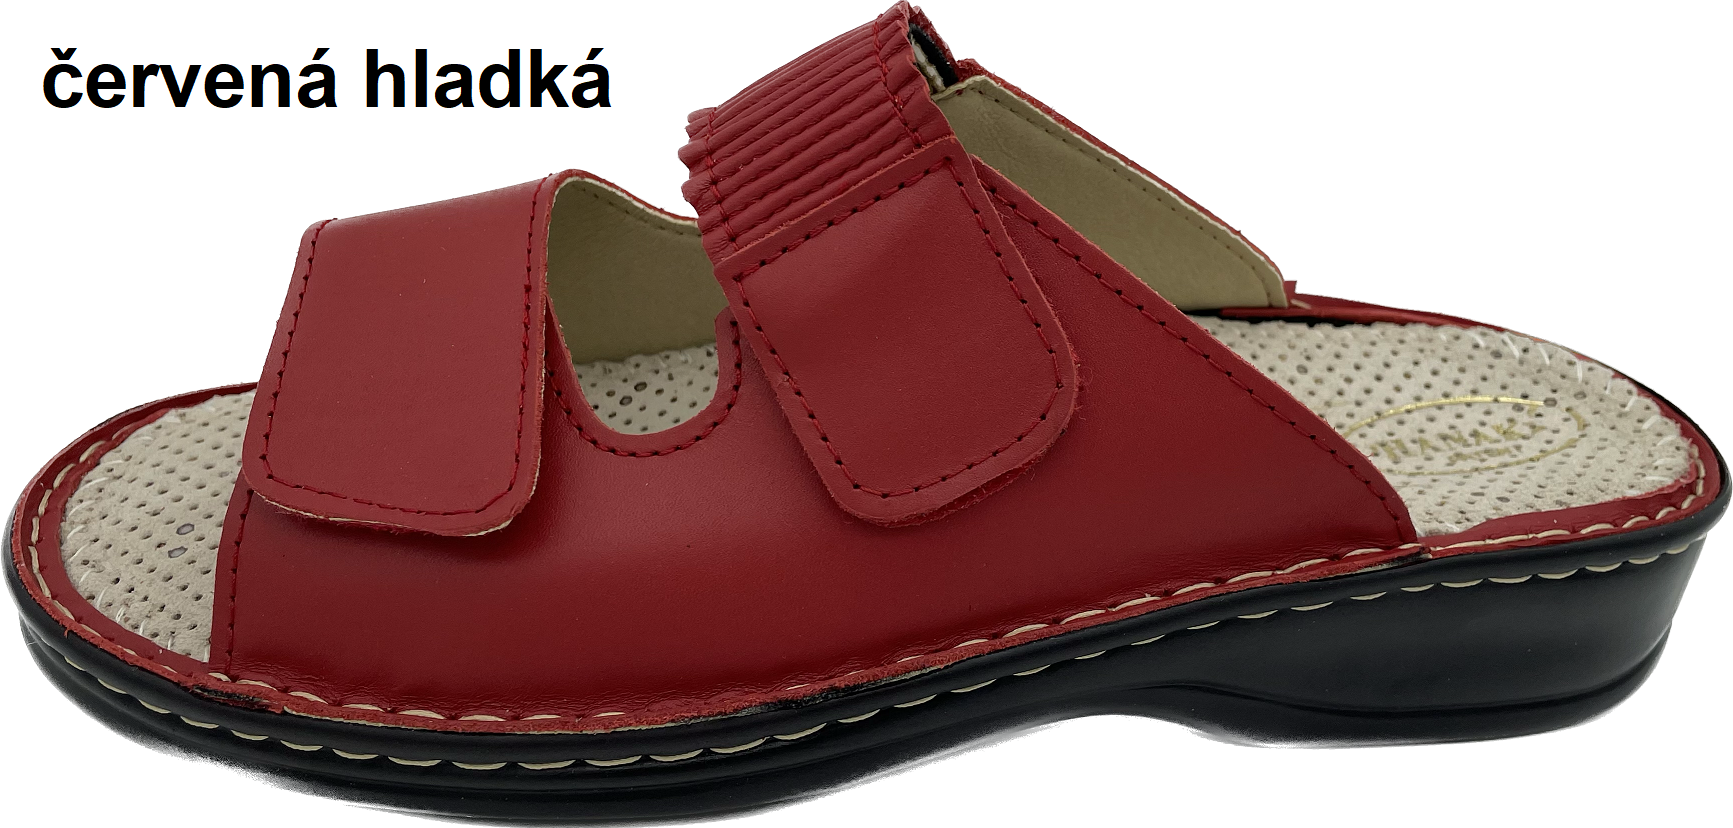 Boty Hanák vzor 304 - černá podešev Barva usně: červená hladká, Velikosti obuvi: 41